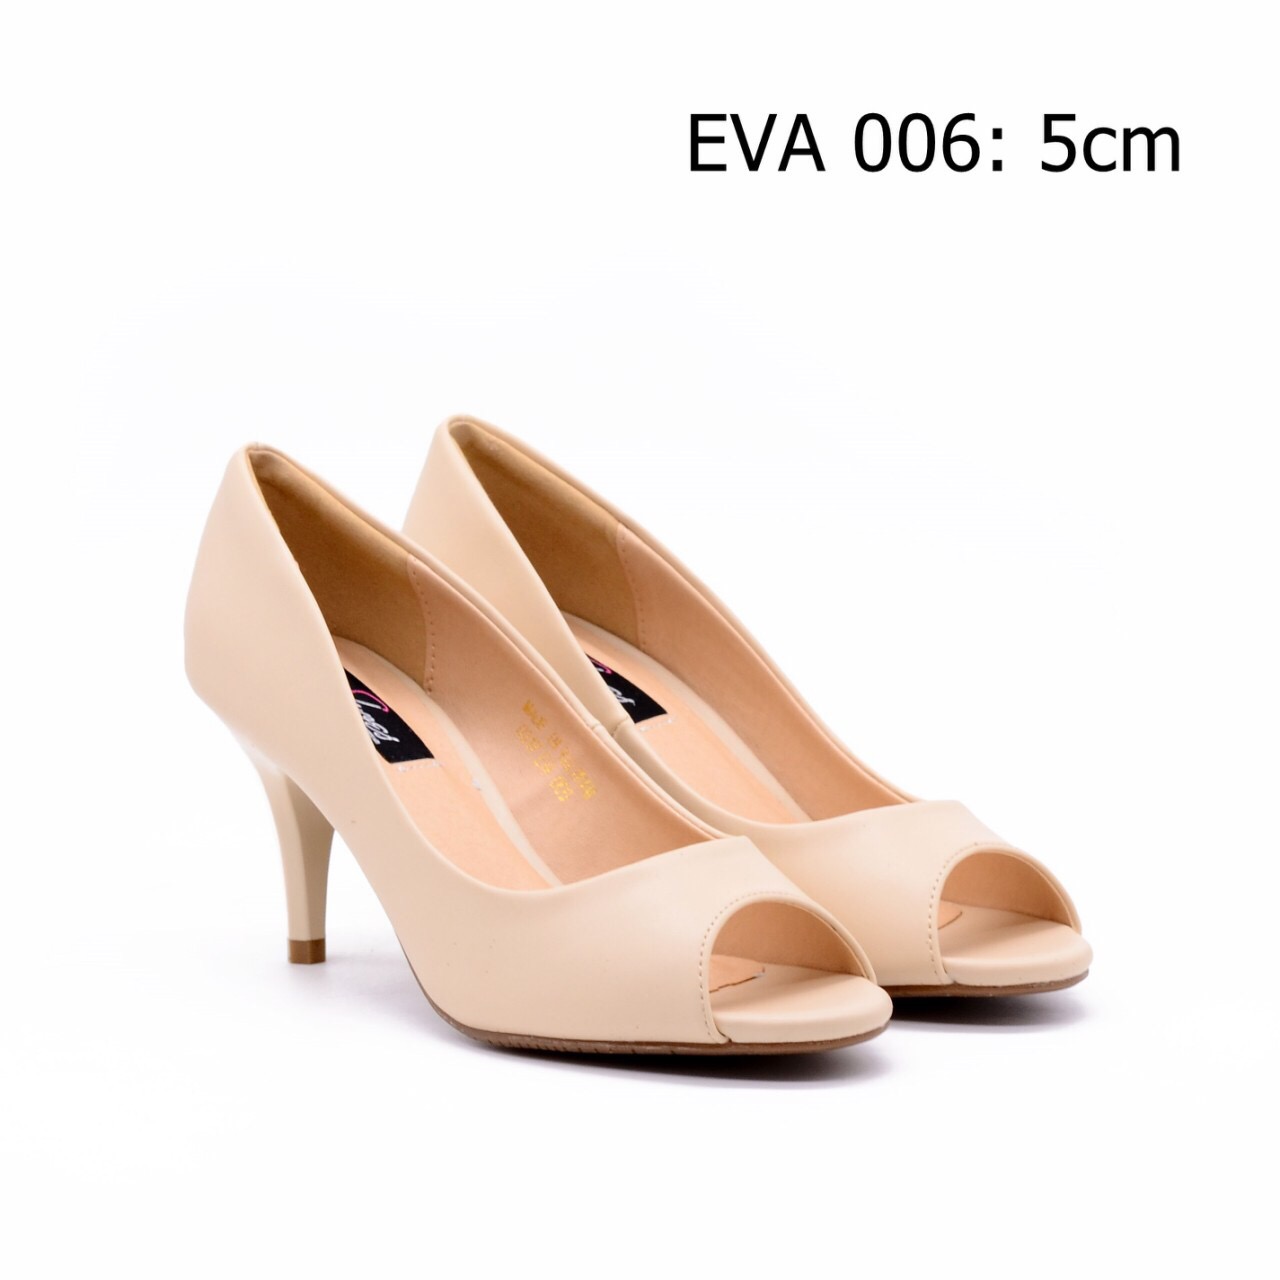 Giày hở mũi EVA006 cao 5cm